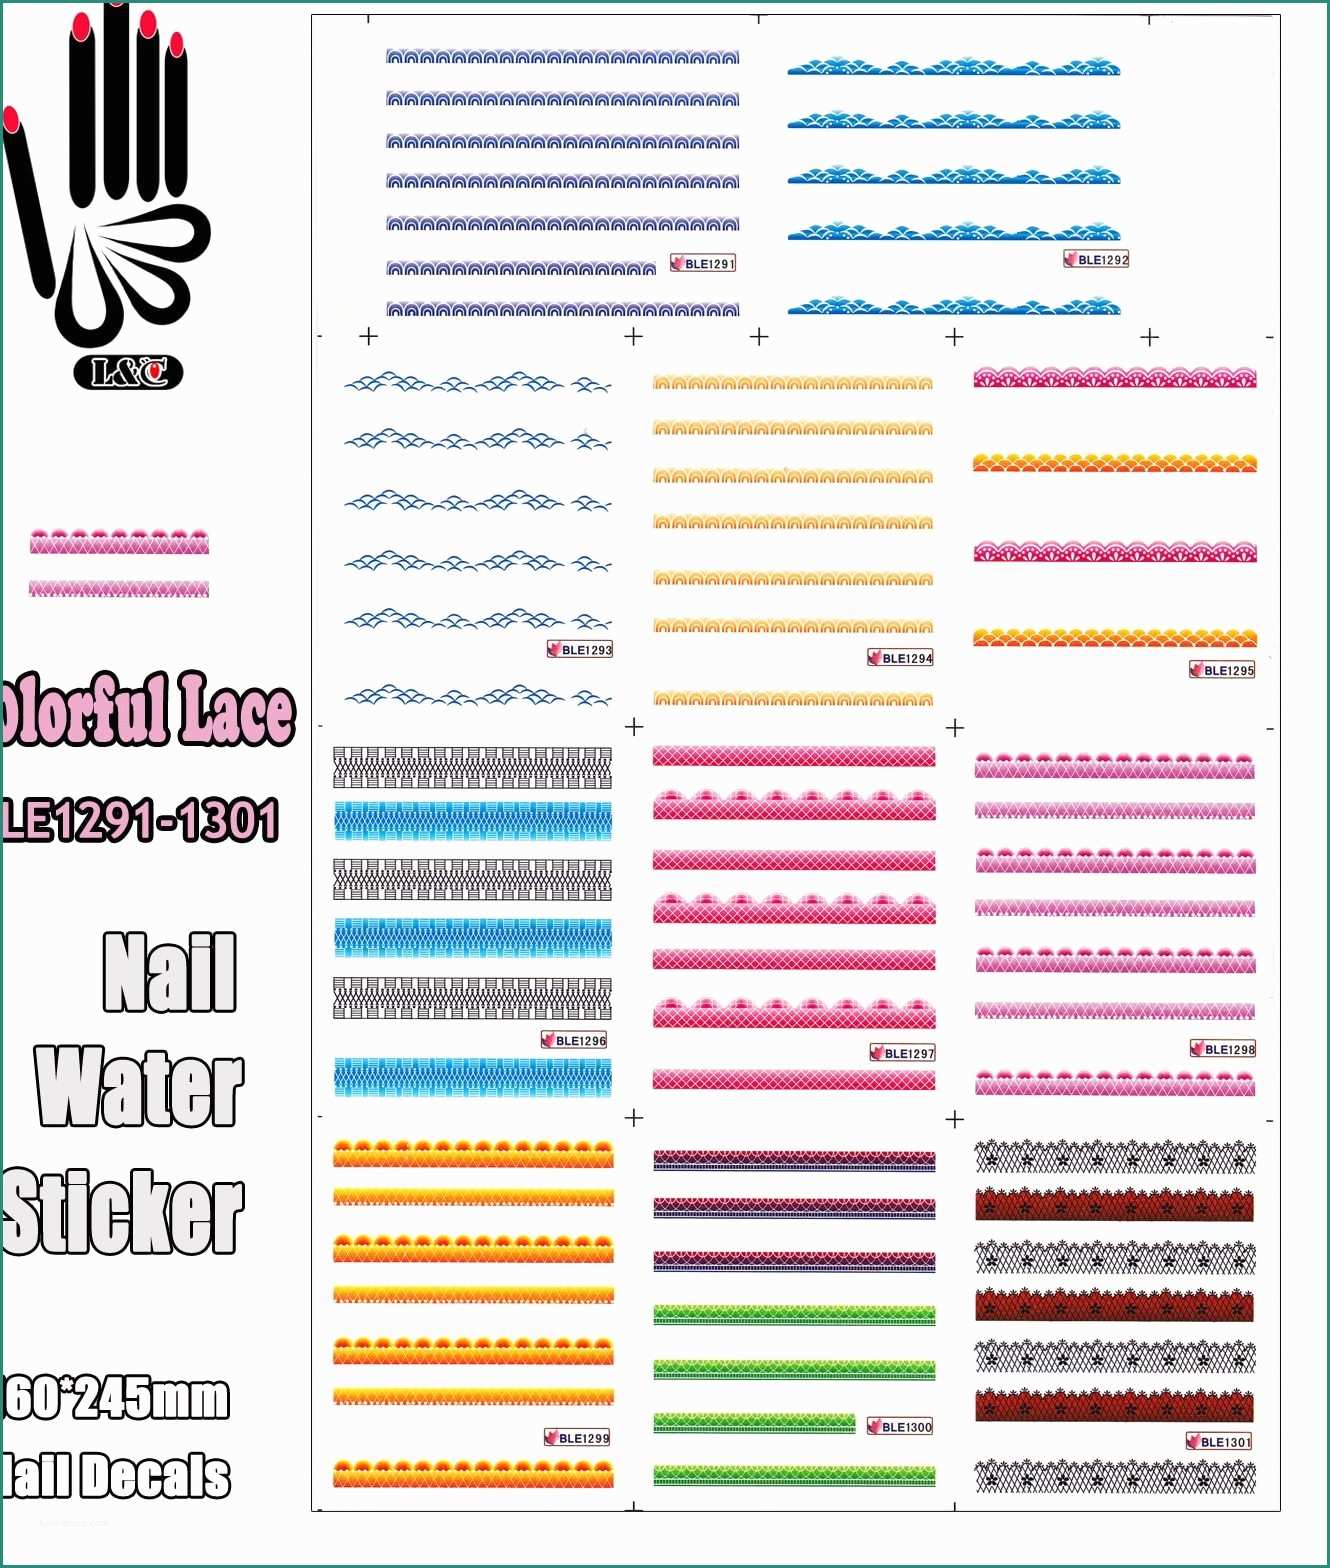 Lampada Led Rs Mm Dimmerabile E â11 Sheets Lot Sticker Art Nail Ble1291 1301 Colorful Lace Nail Art